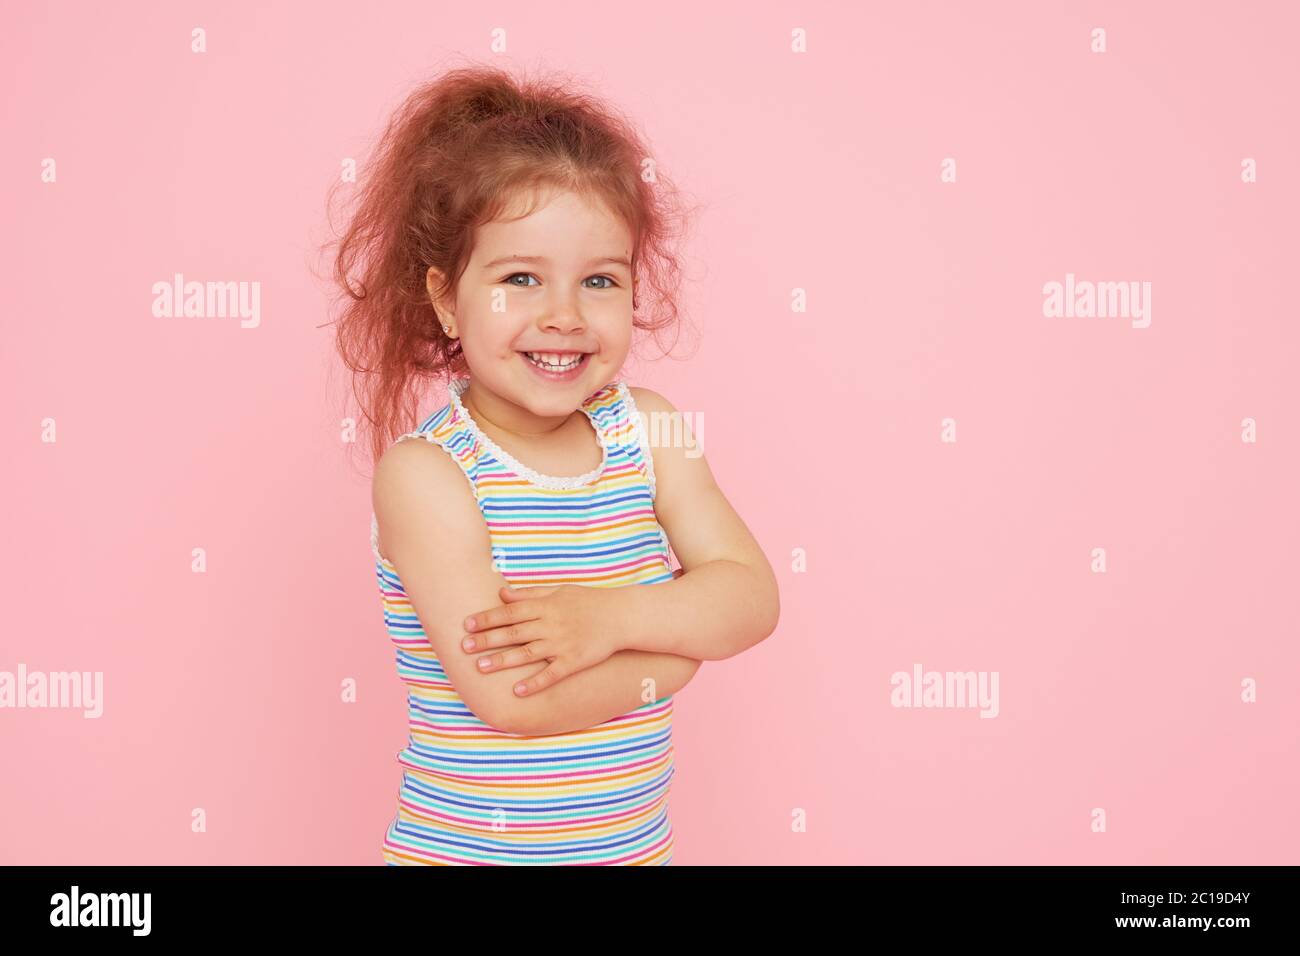 Retrato de una niña pequeña y linda con una sonrisa blanca como la nieve y dientes sanos sobre fondo rosa. Mirando la cámara y riendo. Odontología para c Foto de stock